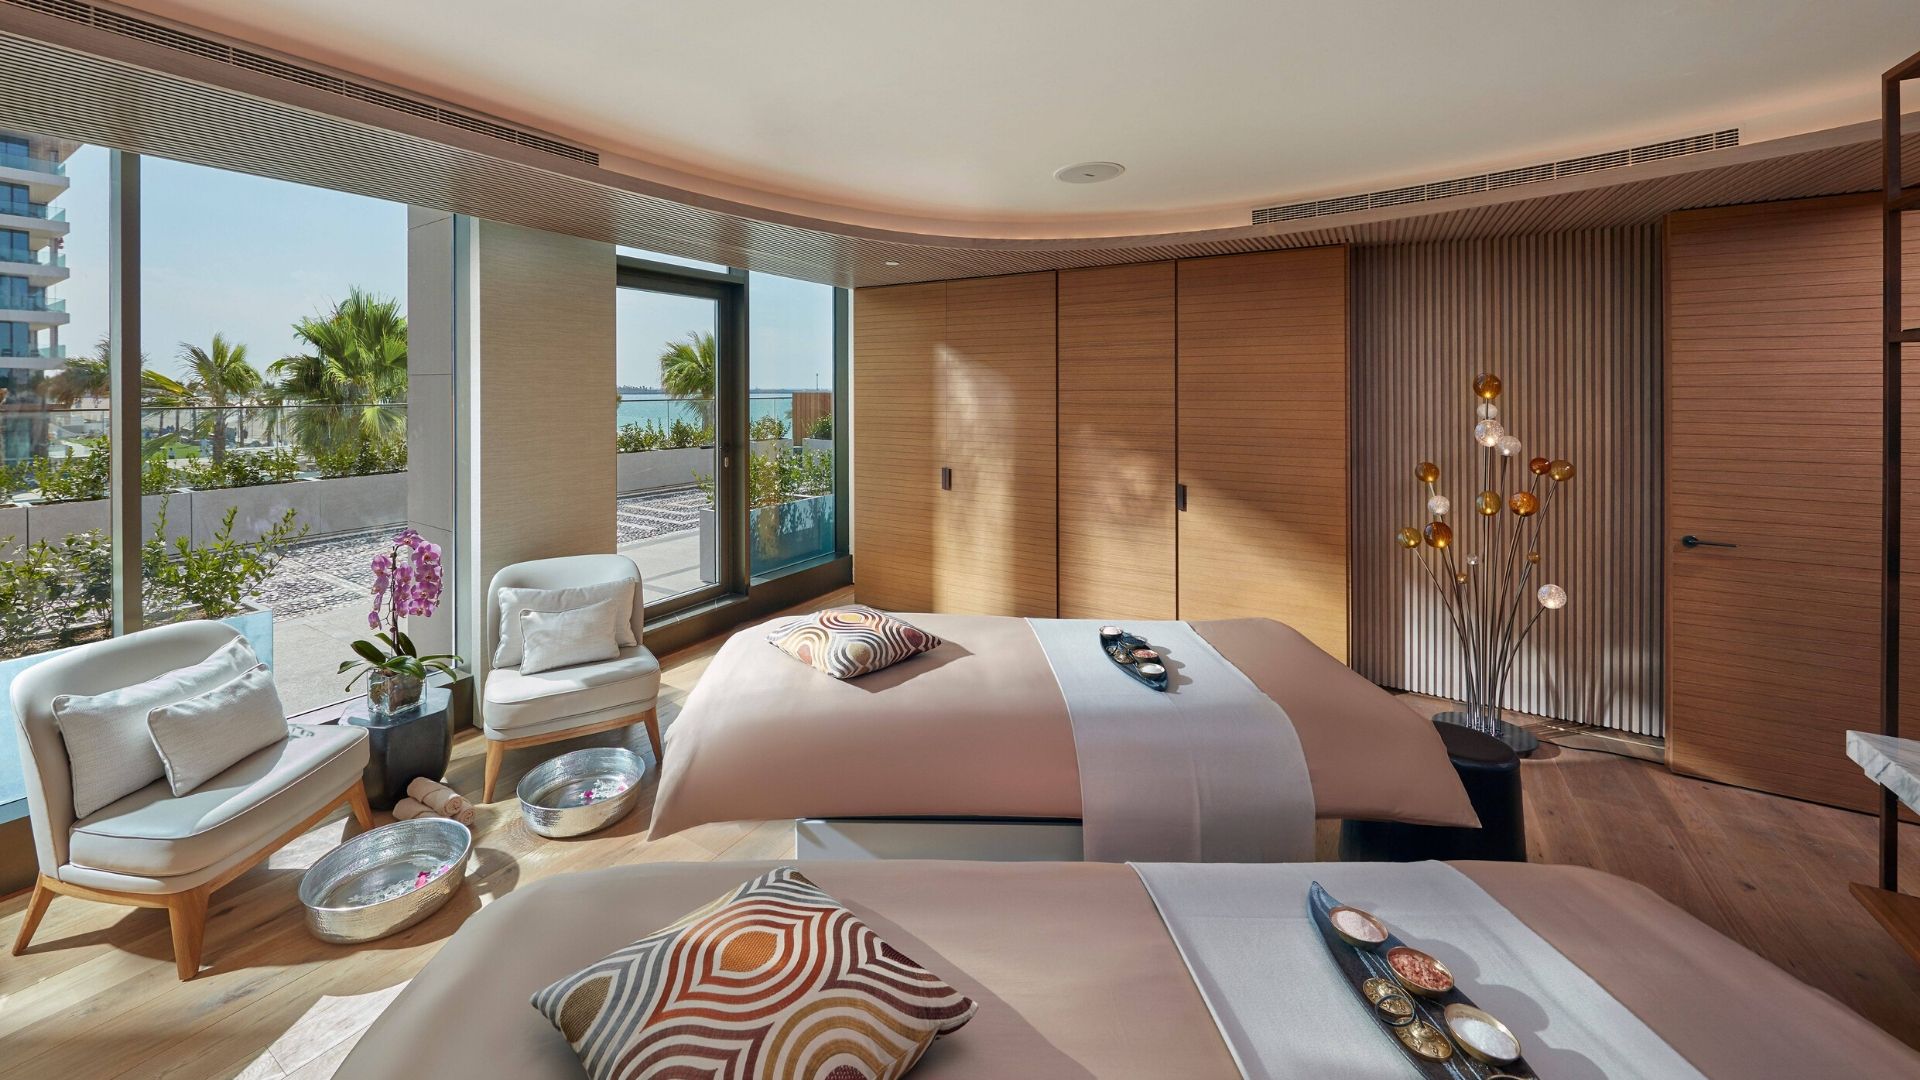 Luxury Spa Culture in Dubai